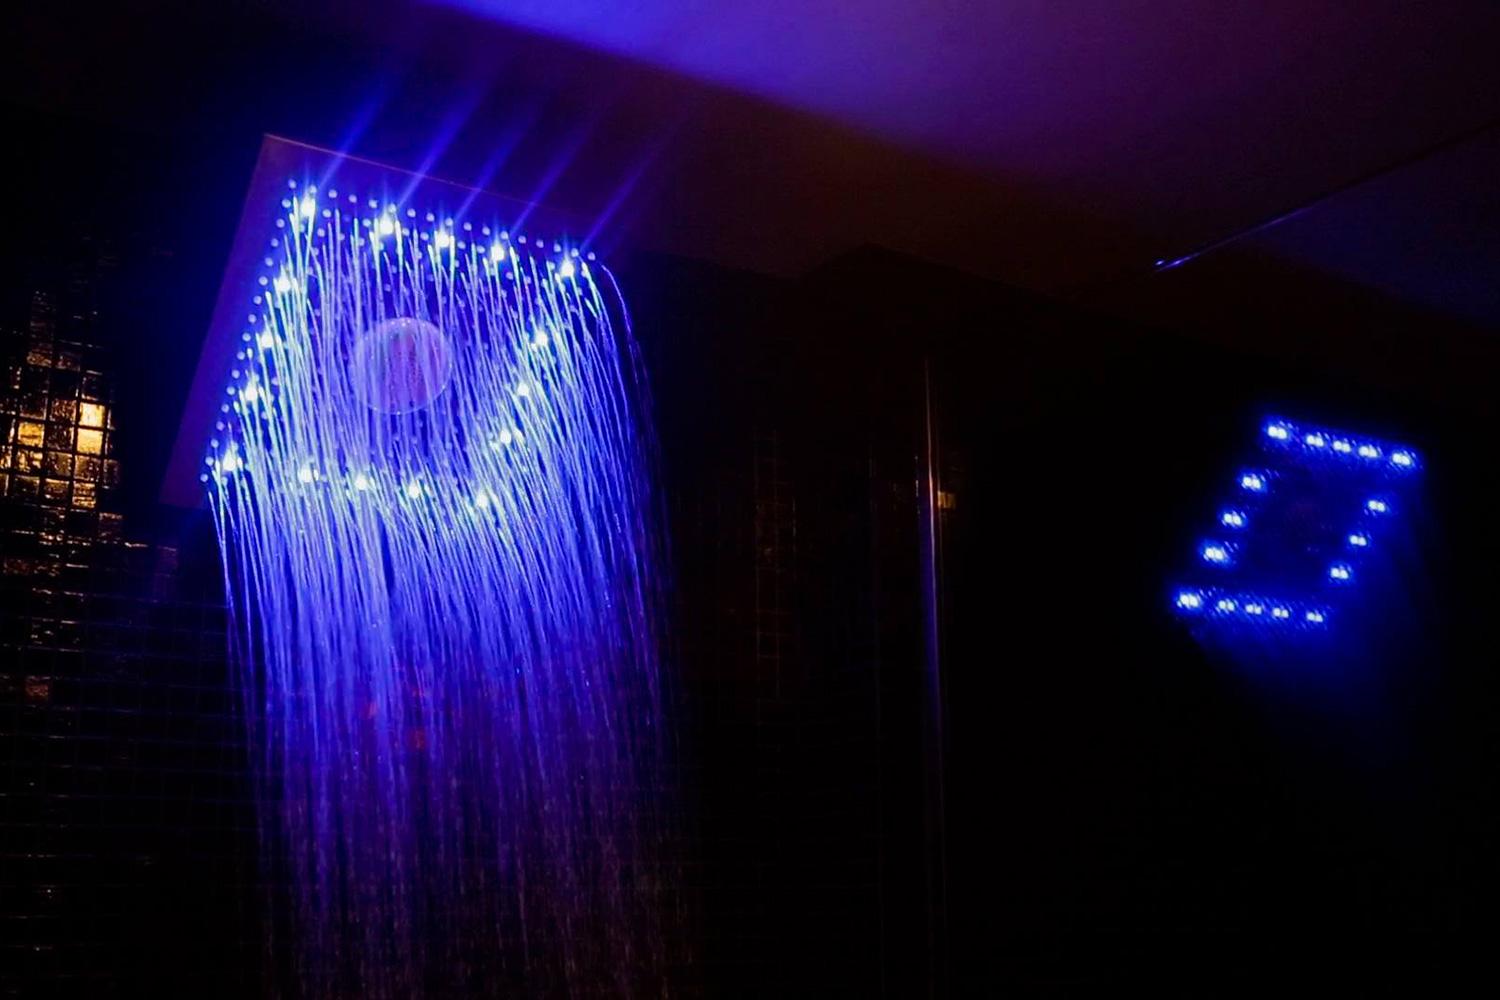 The Shower Speaker